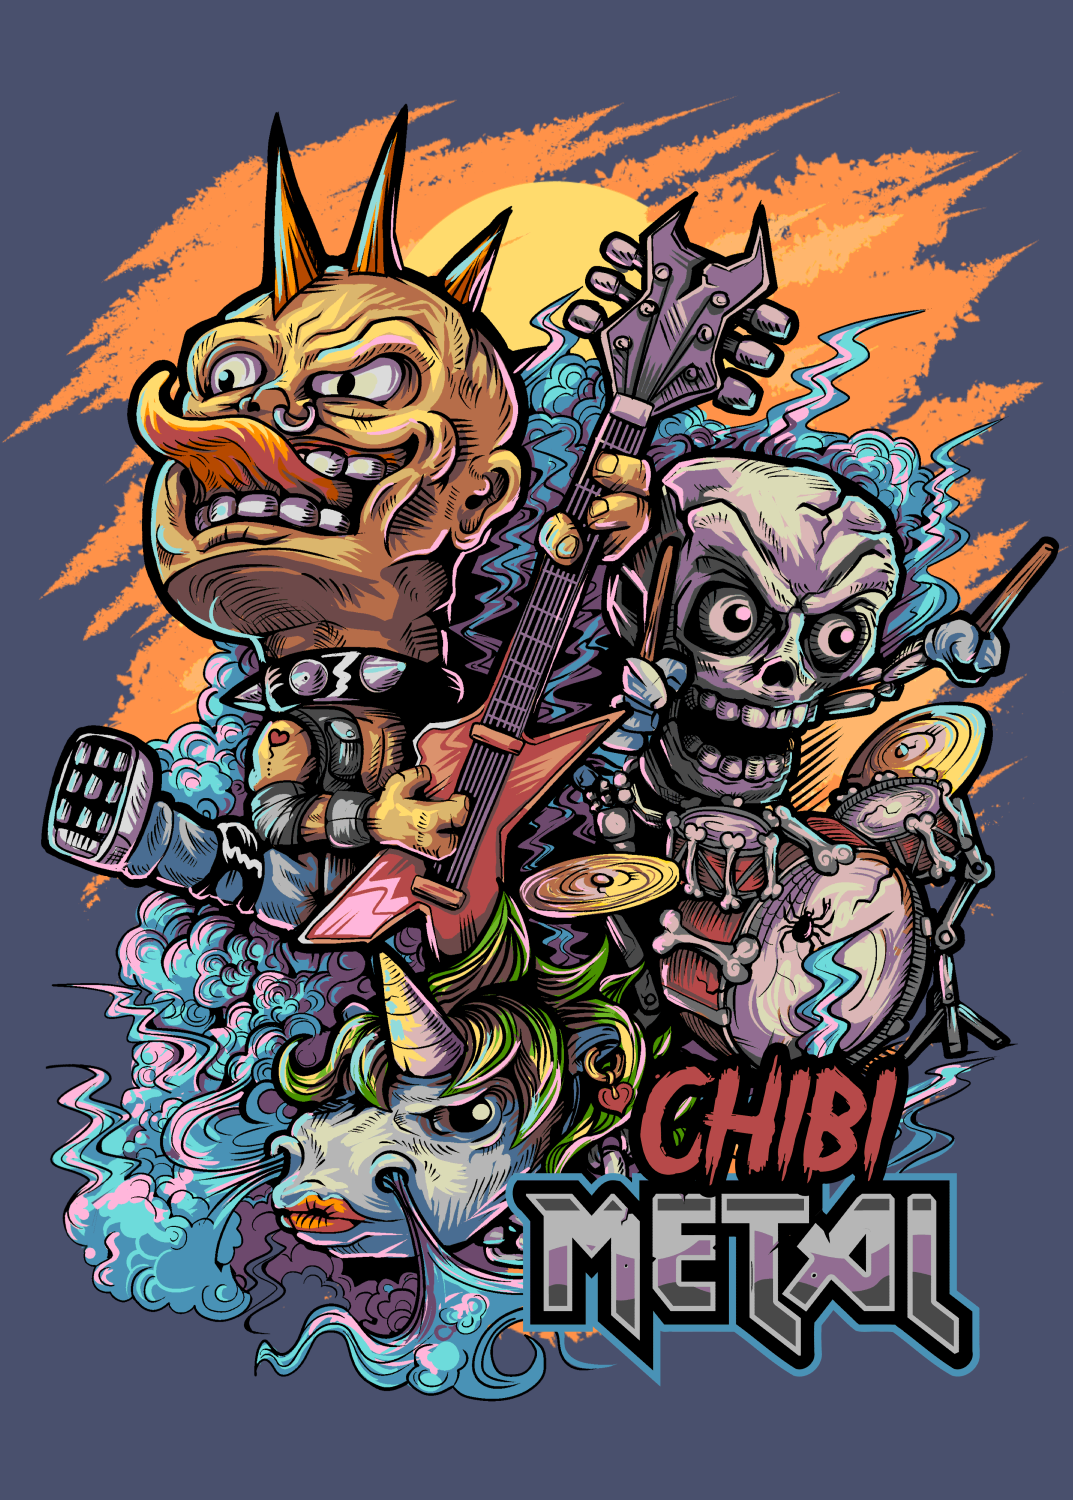 Chibi Metal